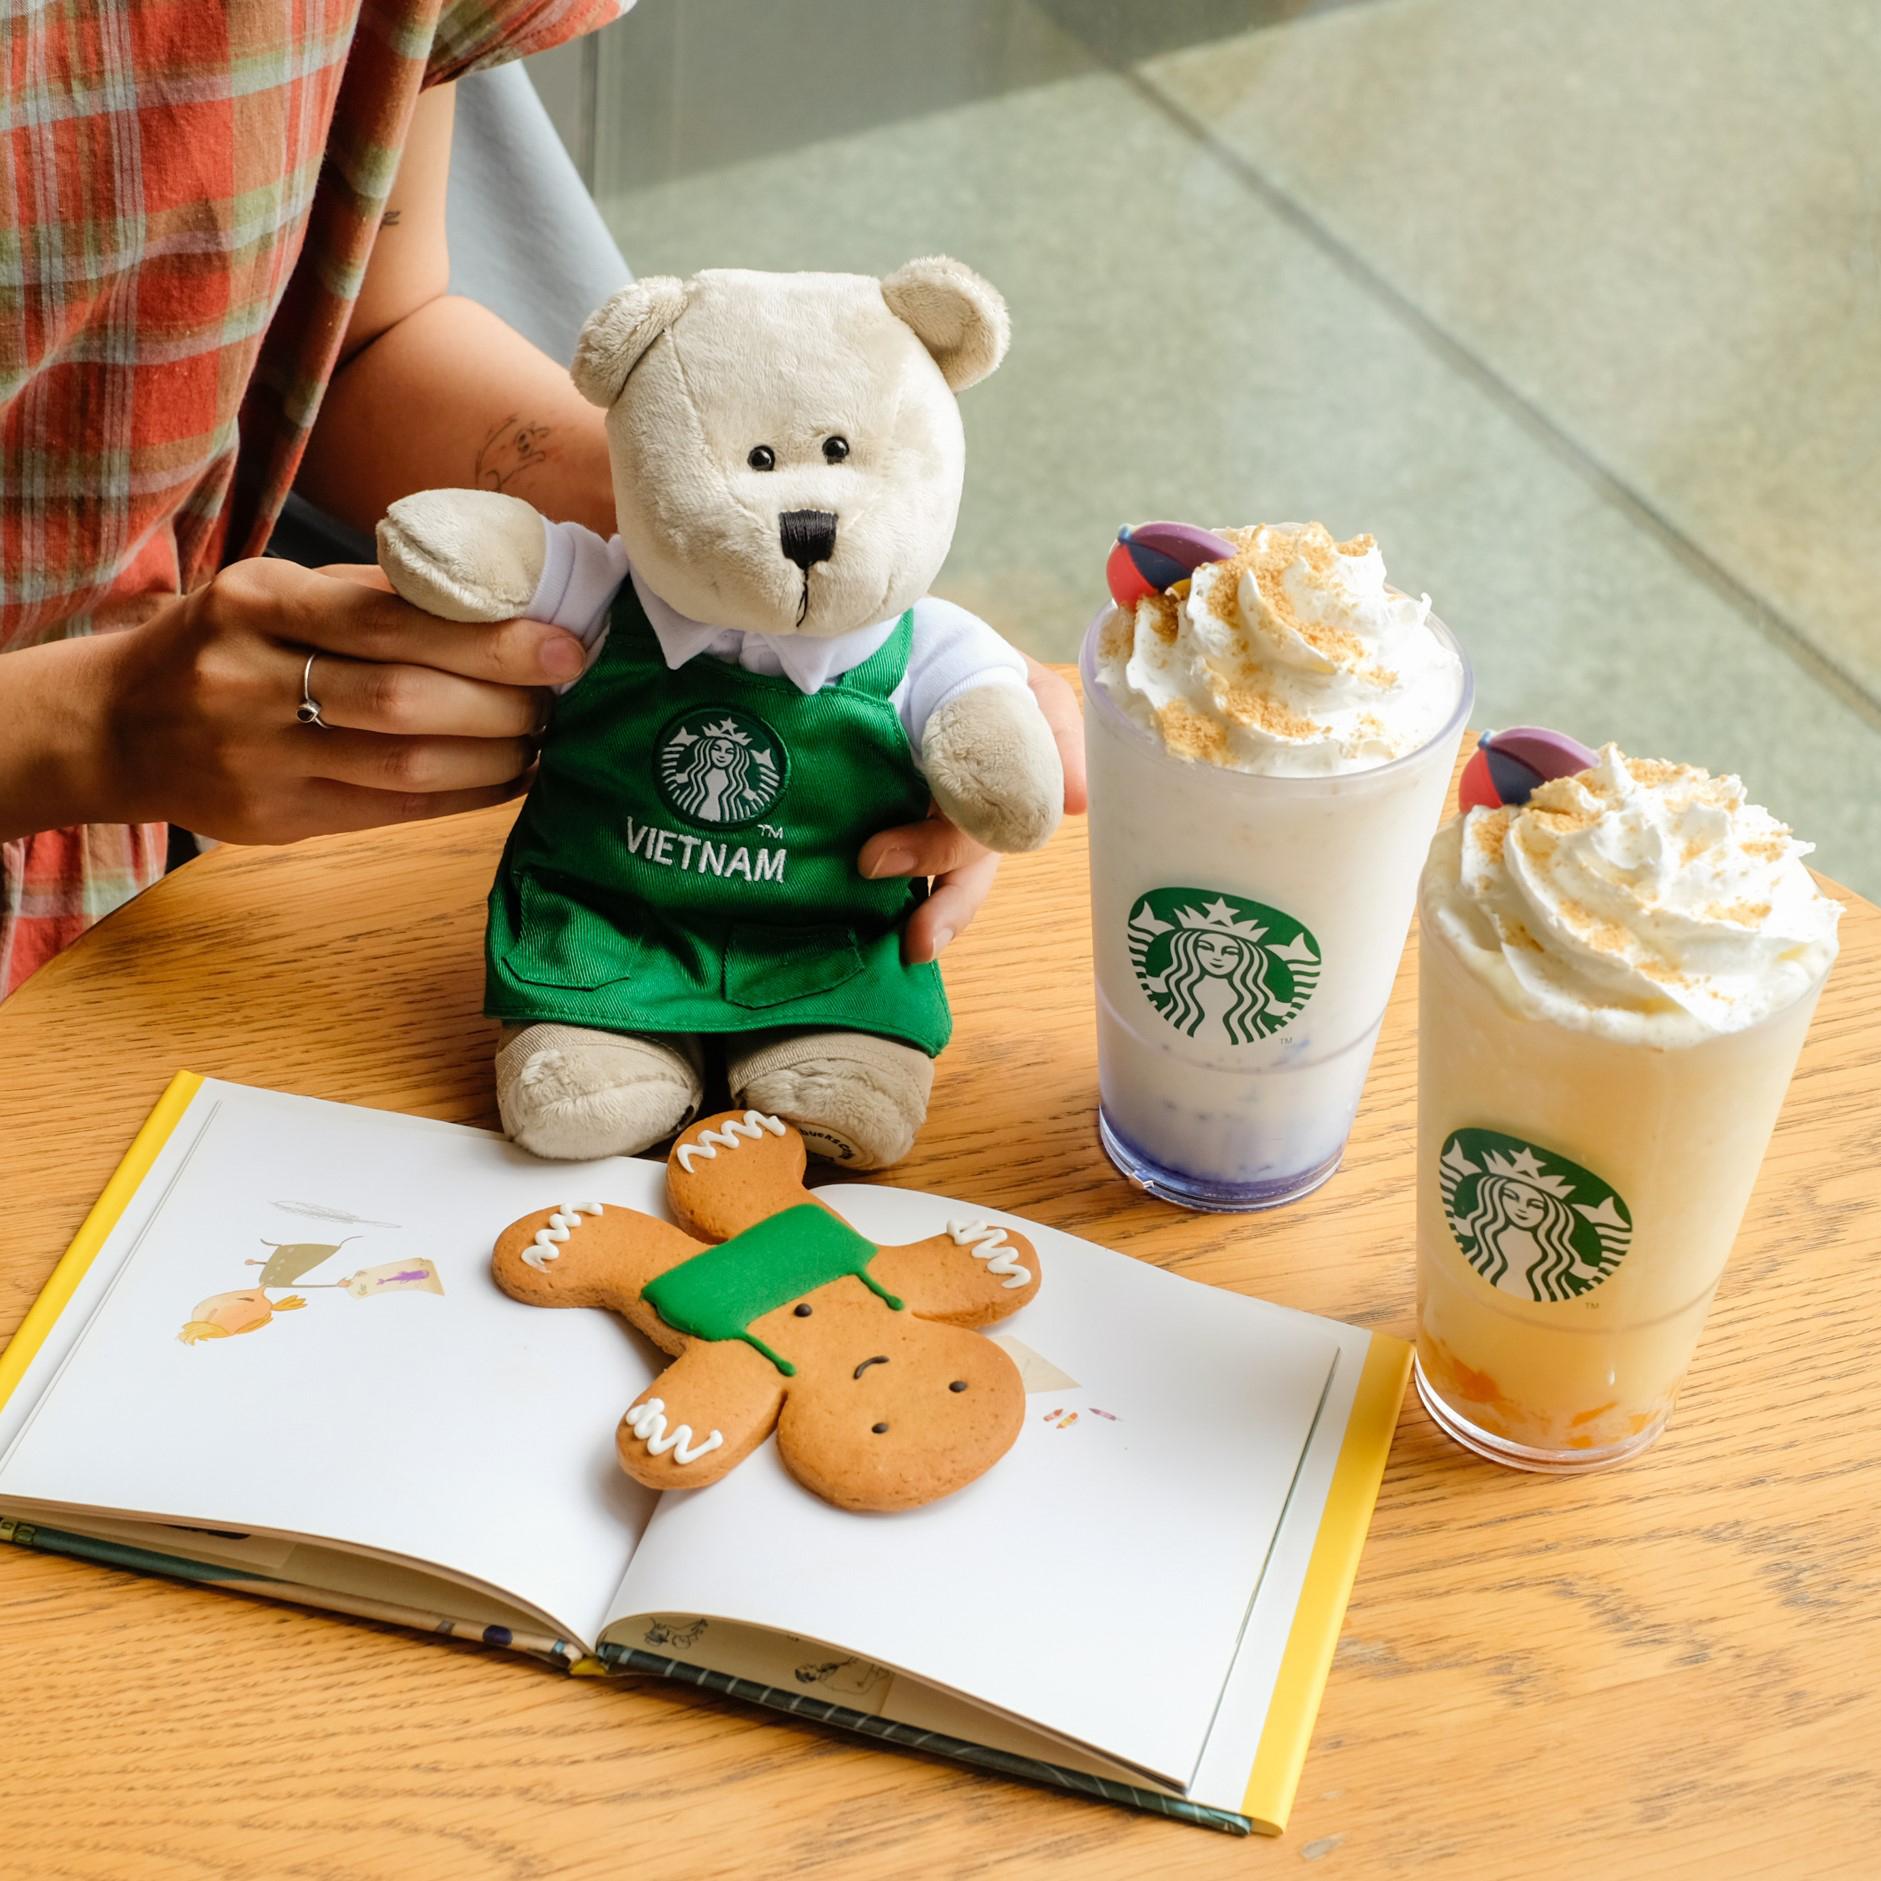 Starbucks chính thức mở gian hàng eGift trên Lazada: Hình ảnh siêu xinh lại còn giảm thêm đến 100k, chốt đơn đi chờ chi bạn ơi! - Ảnh 2.